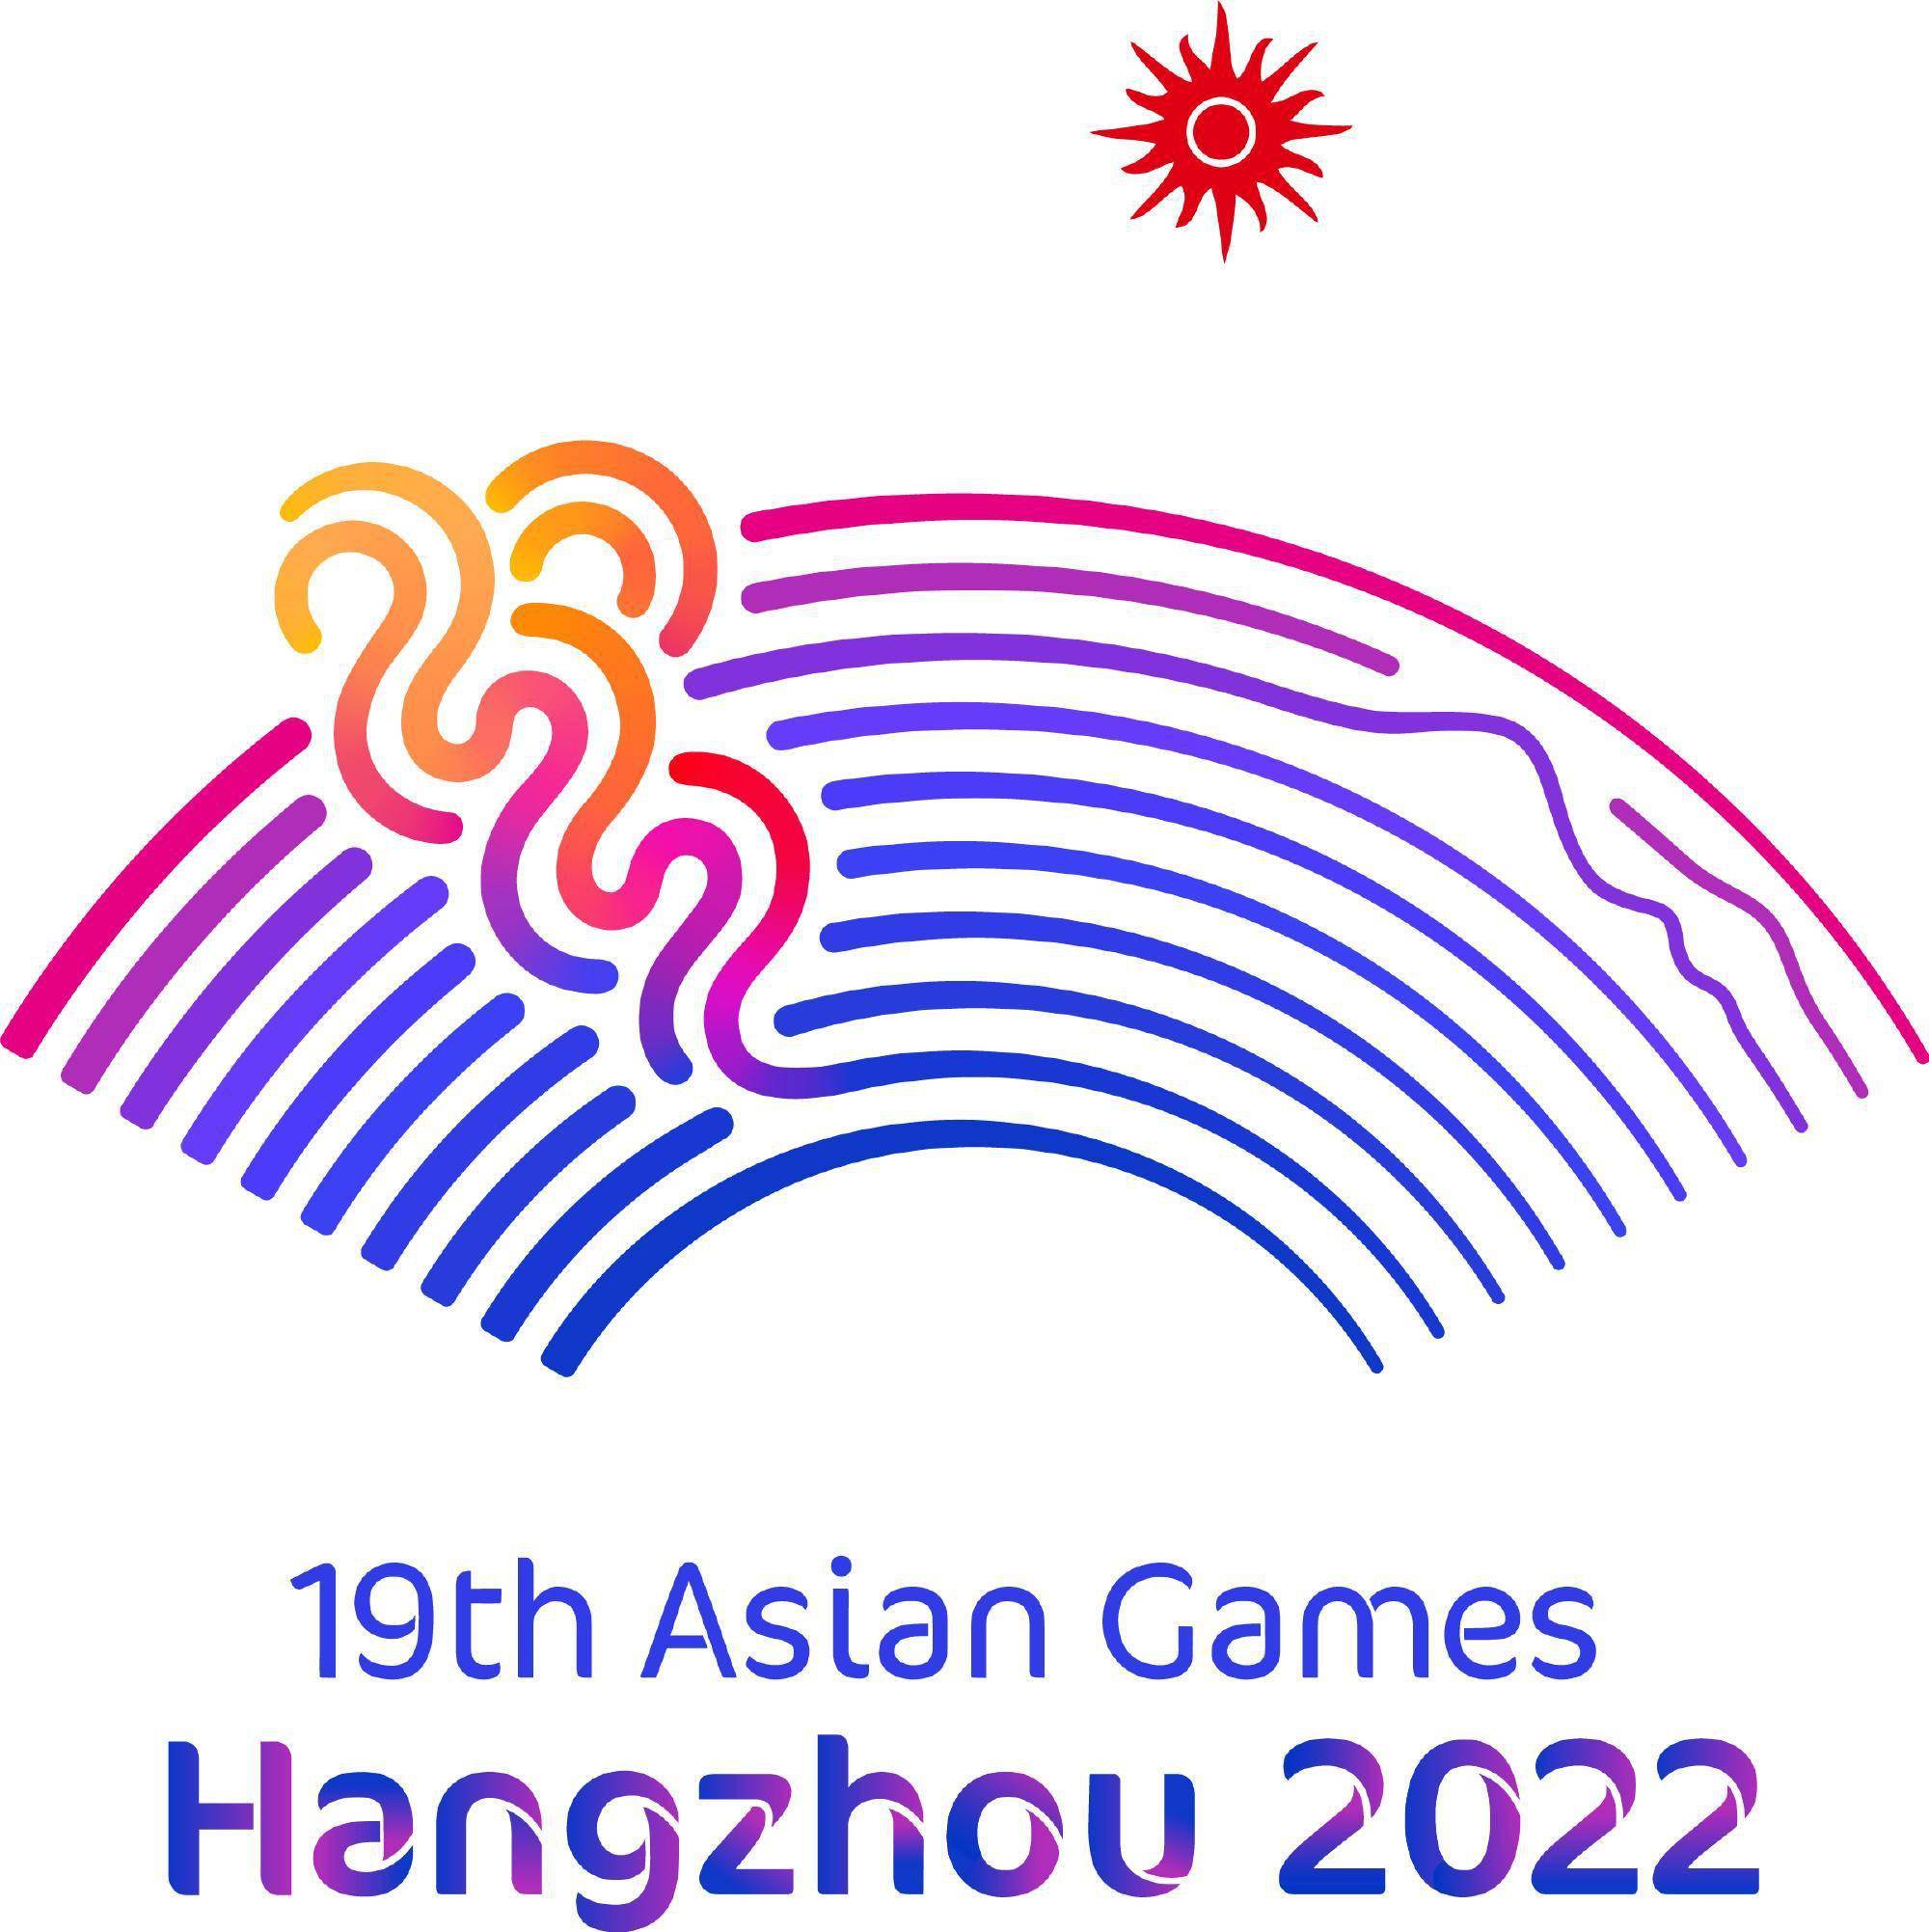 2022杭州亚运会时间图片